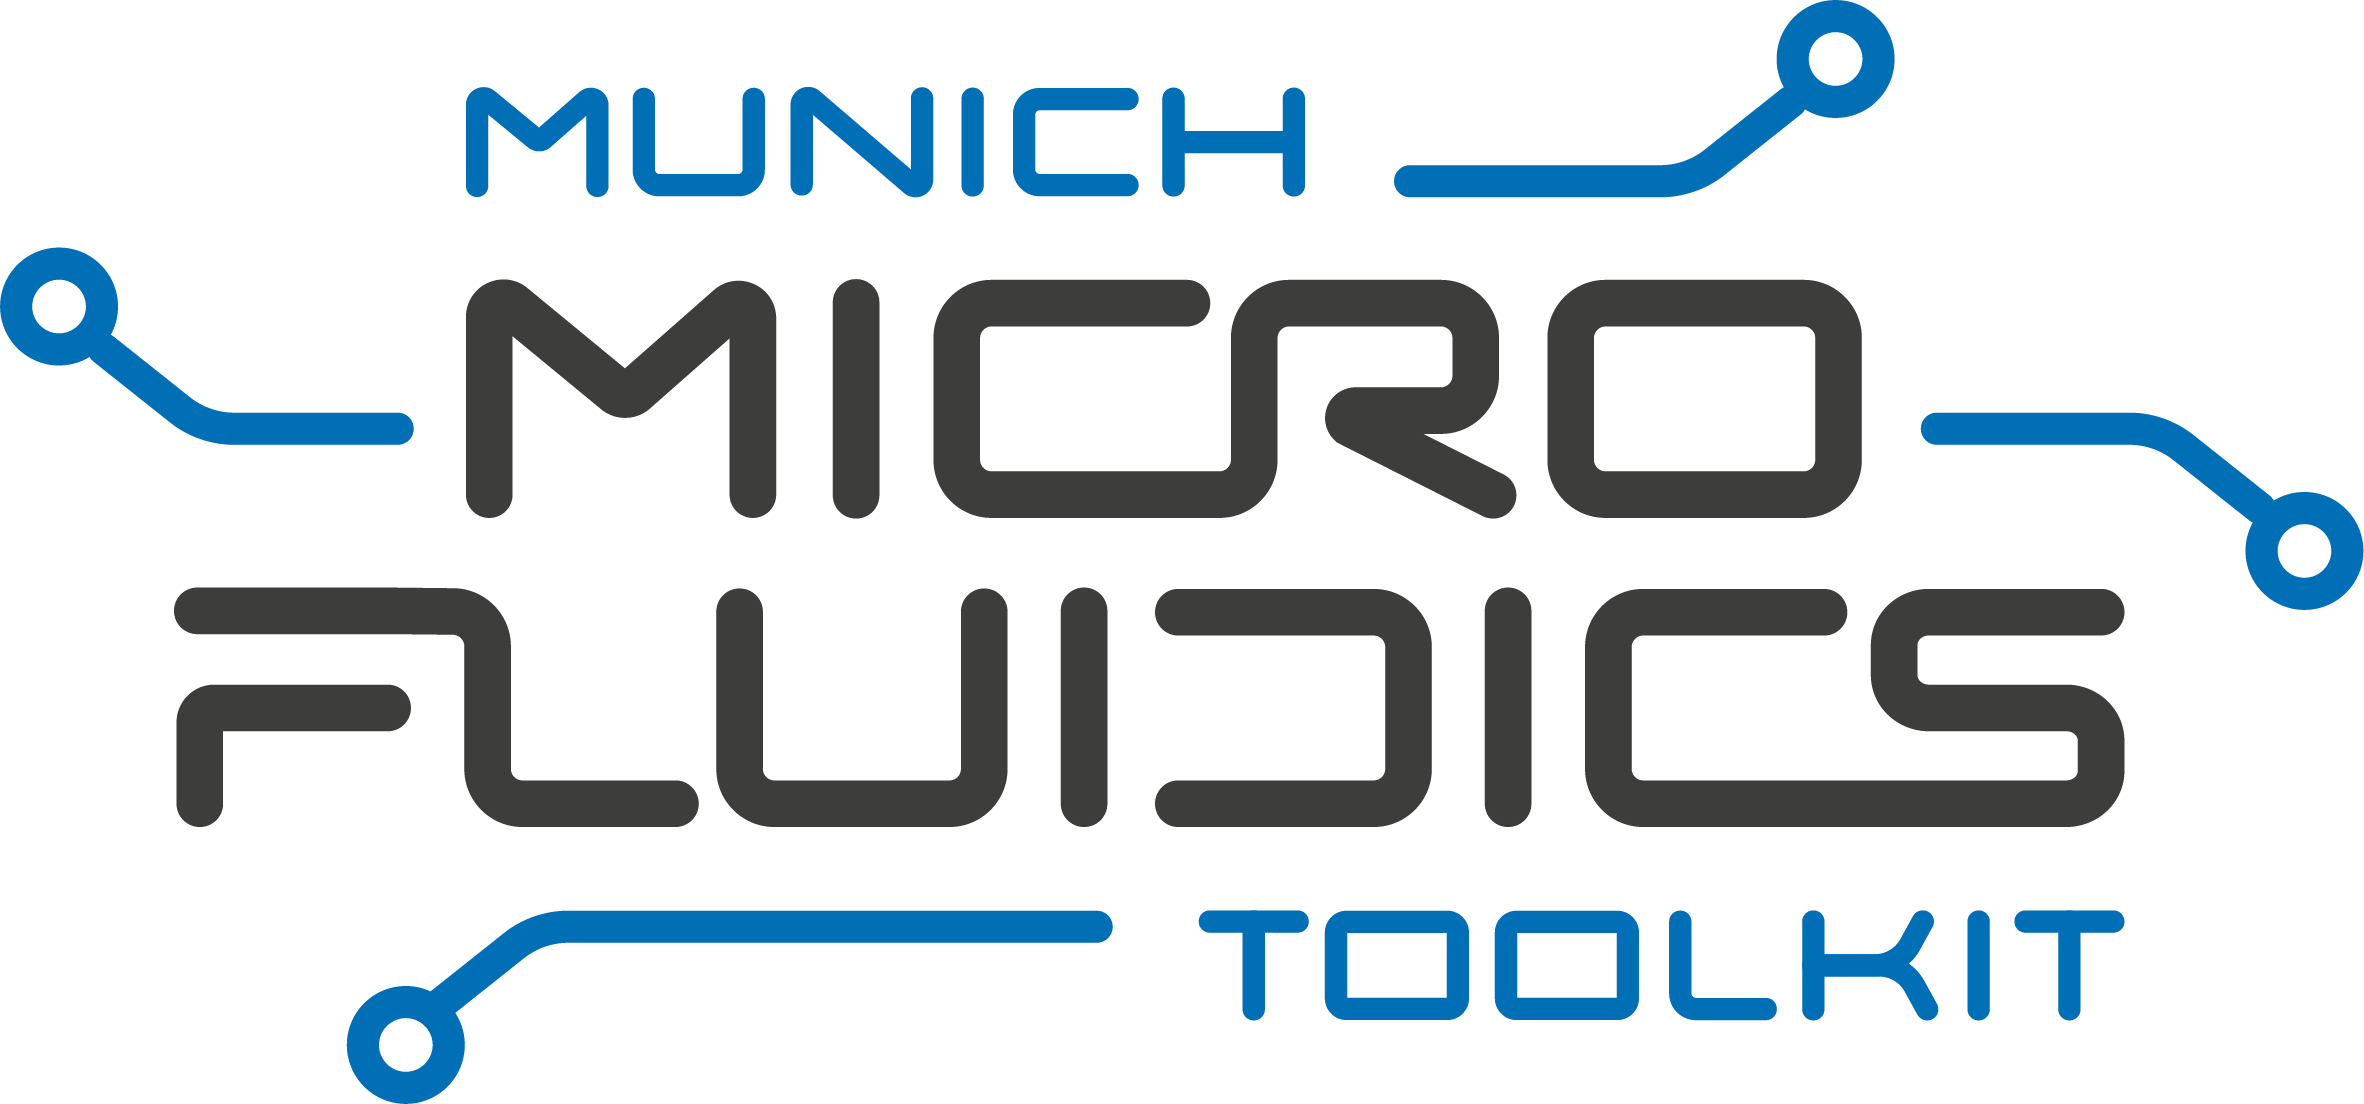 Munich Microfluidics Toolkit